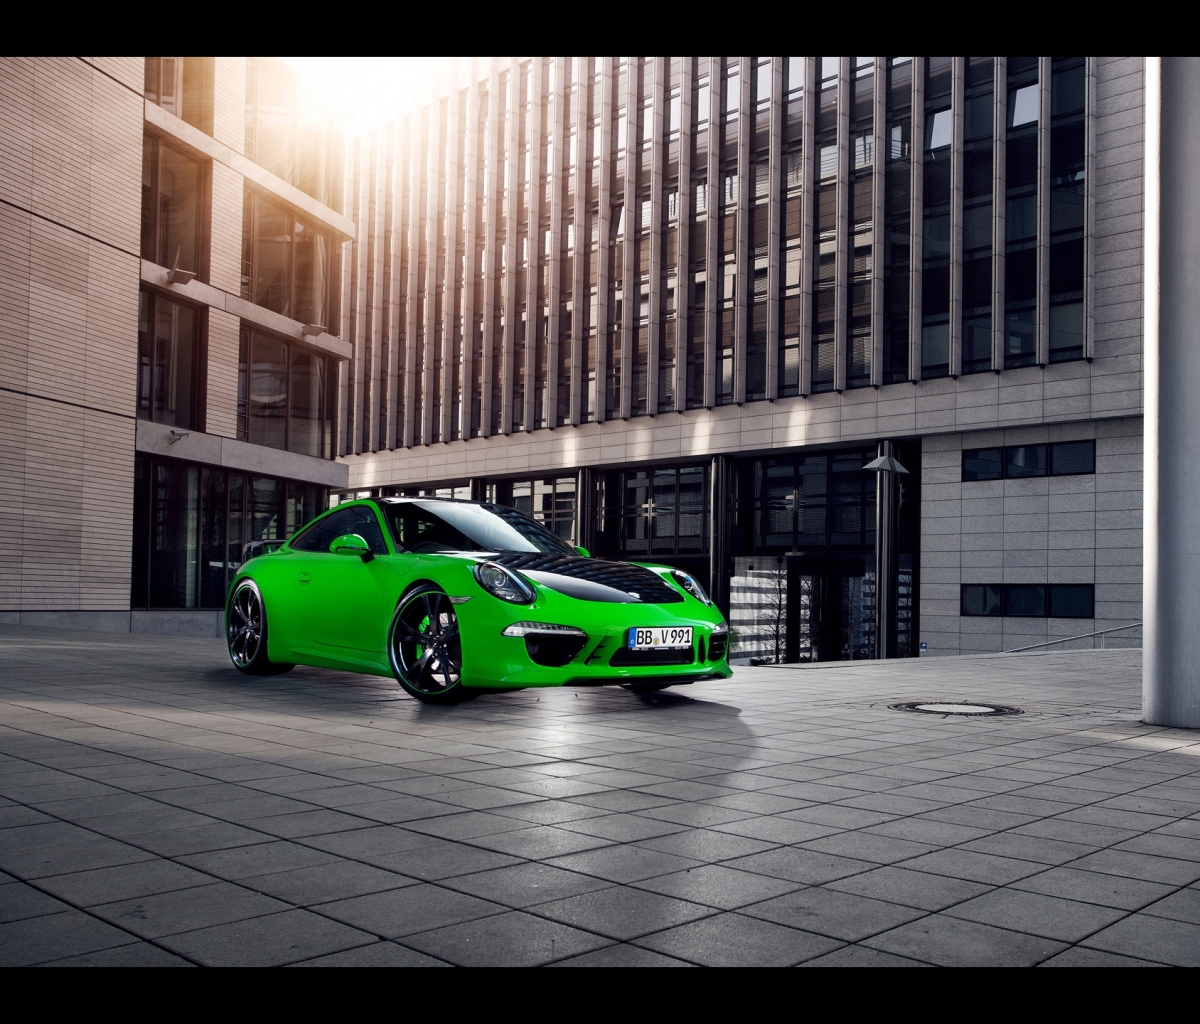 Descarga gratuita de fondo de pantalla para móvil de Porsche, Edificio, Coche, Vehículo, Vehículos, Porsche 911 Carrera.